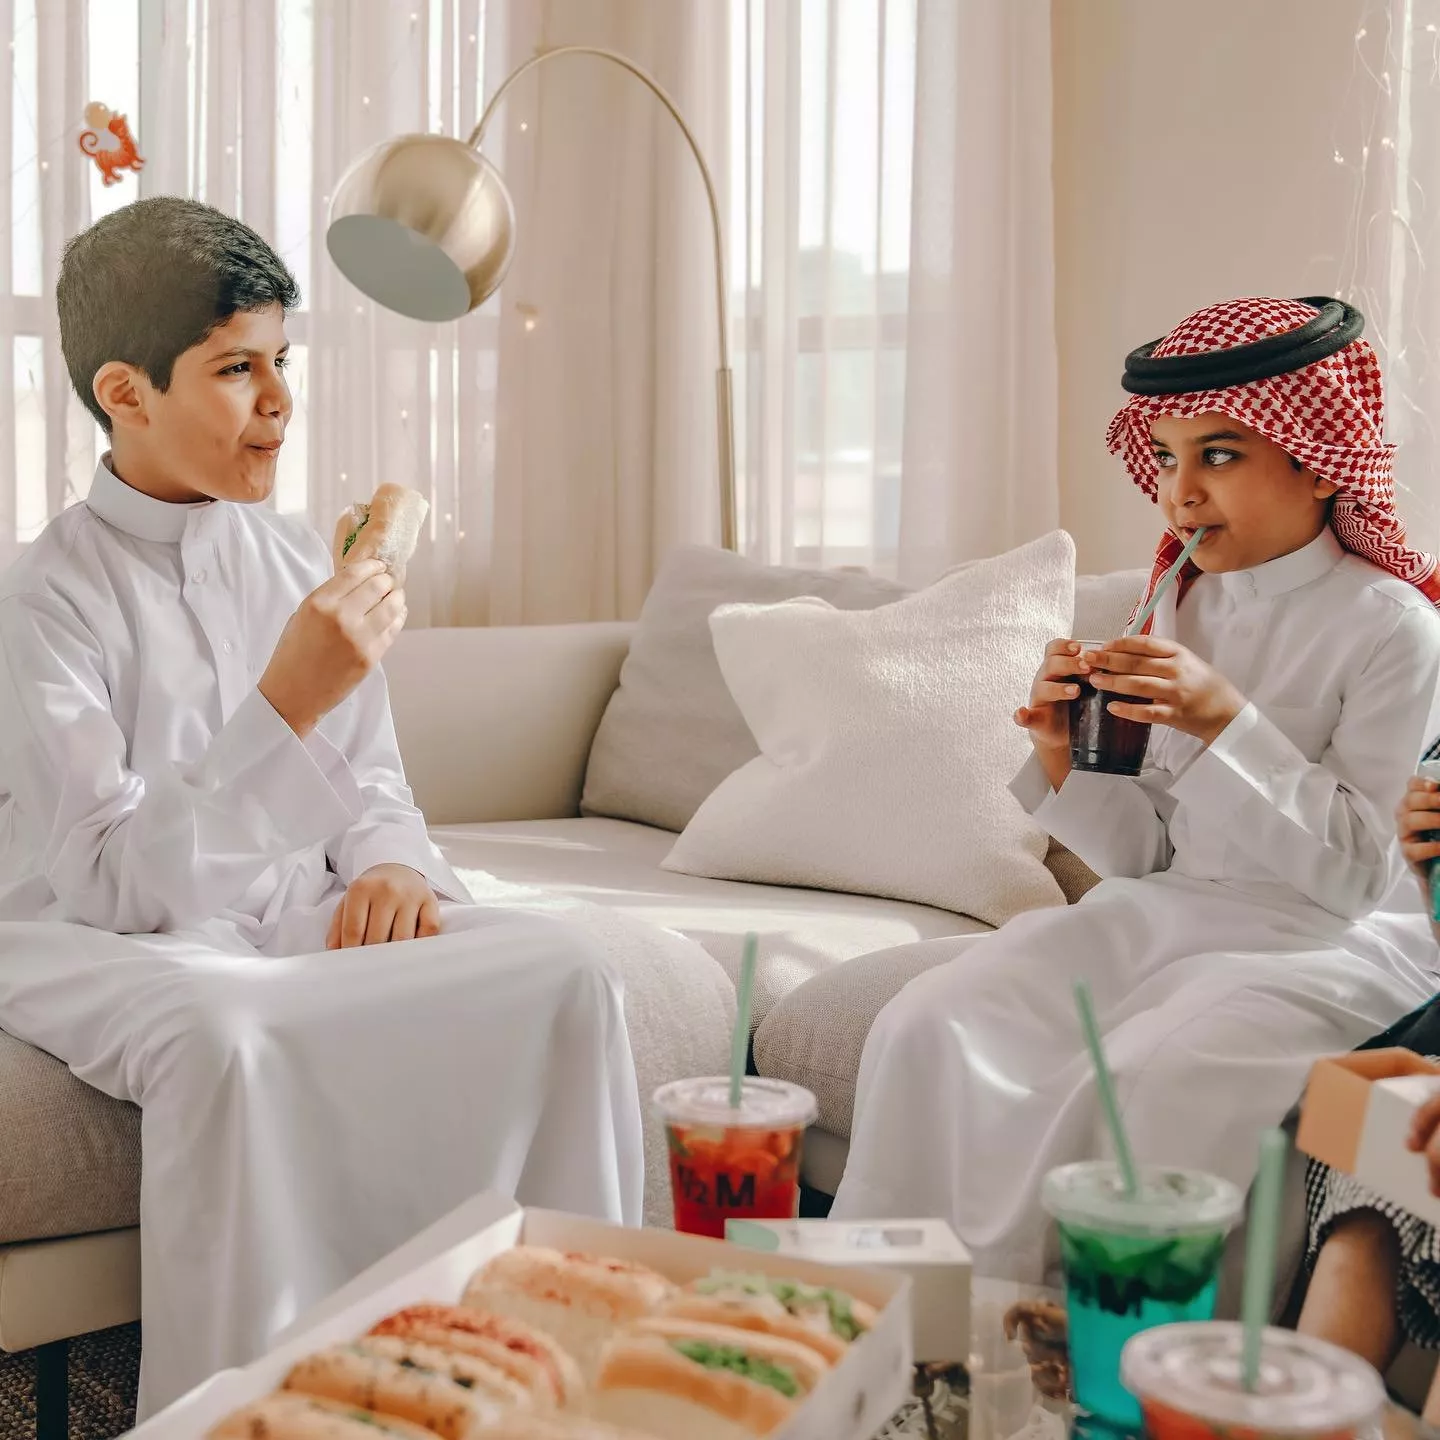 افضل كوفي شوب في الرياض للعوائل، مثالية لجلسة مع الأهل، الإخوة والأولاد!